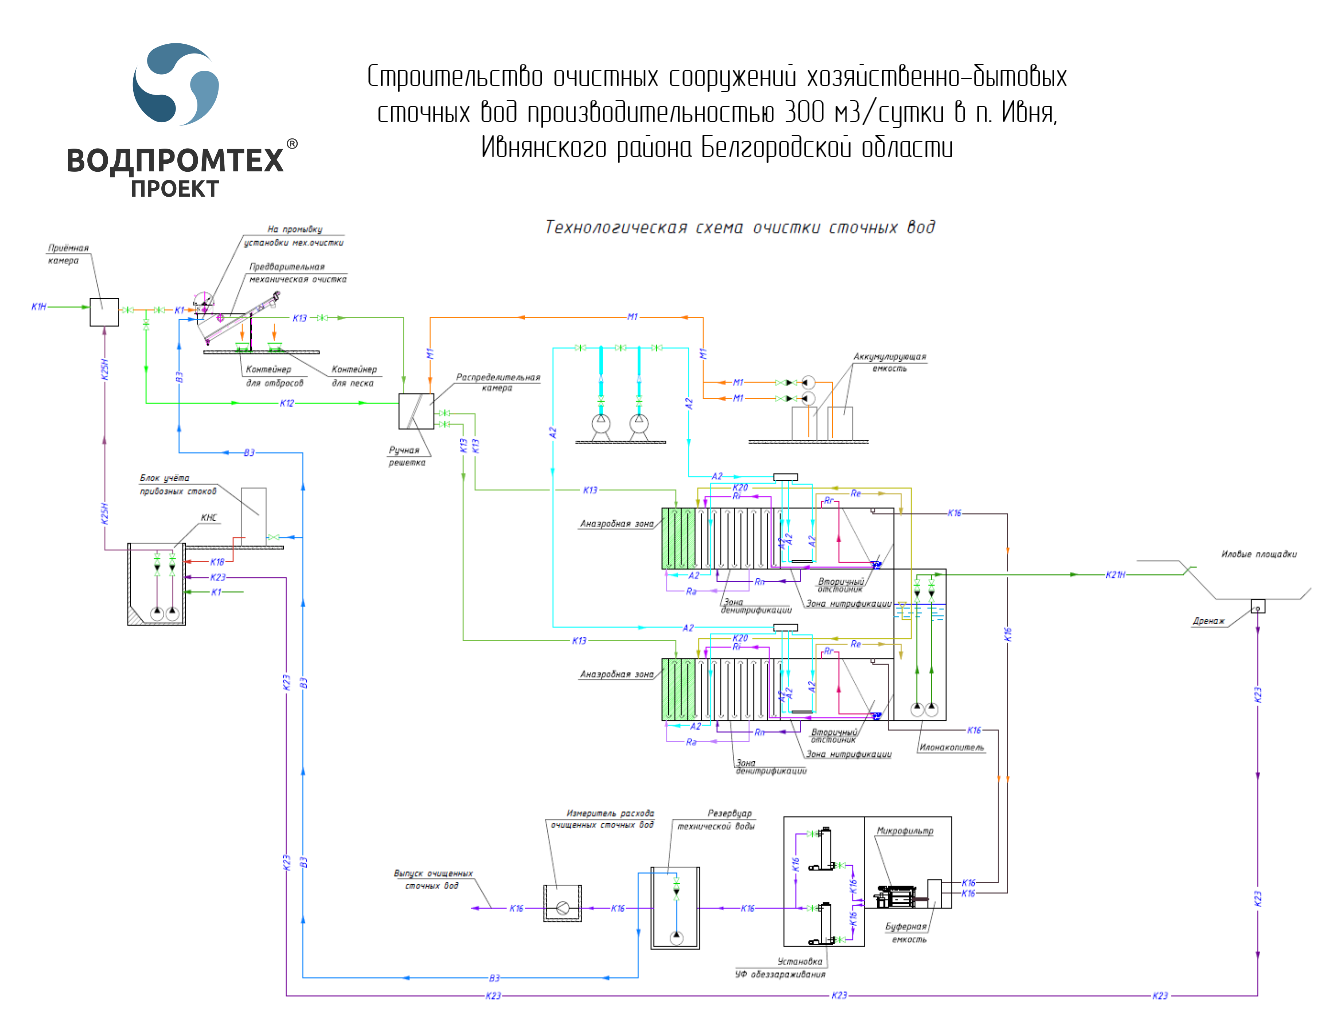 Компания "Водпромтех" приняла участие в проекте по модернизации систем коммунальной инфраструктуры